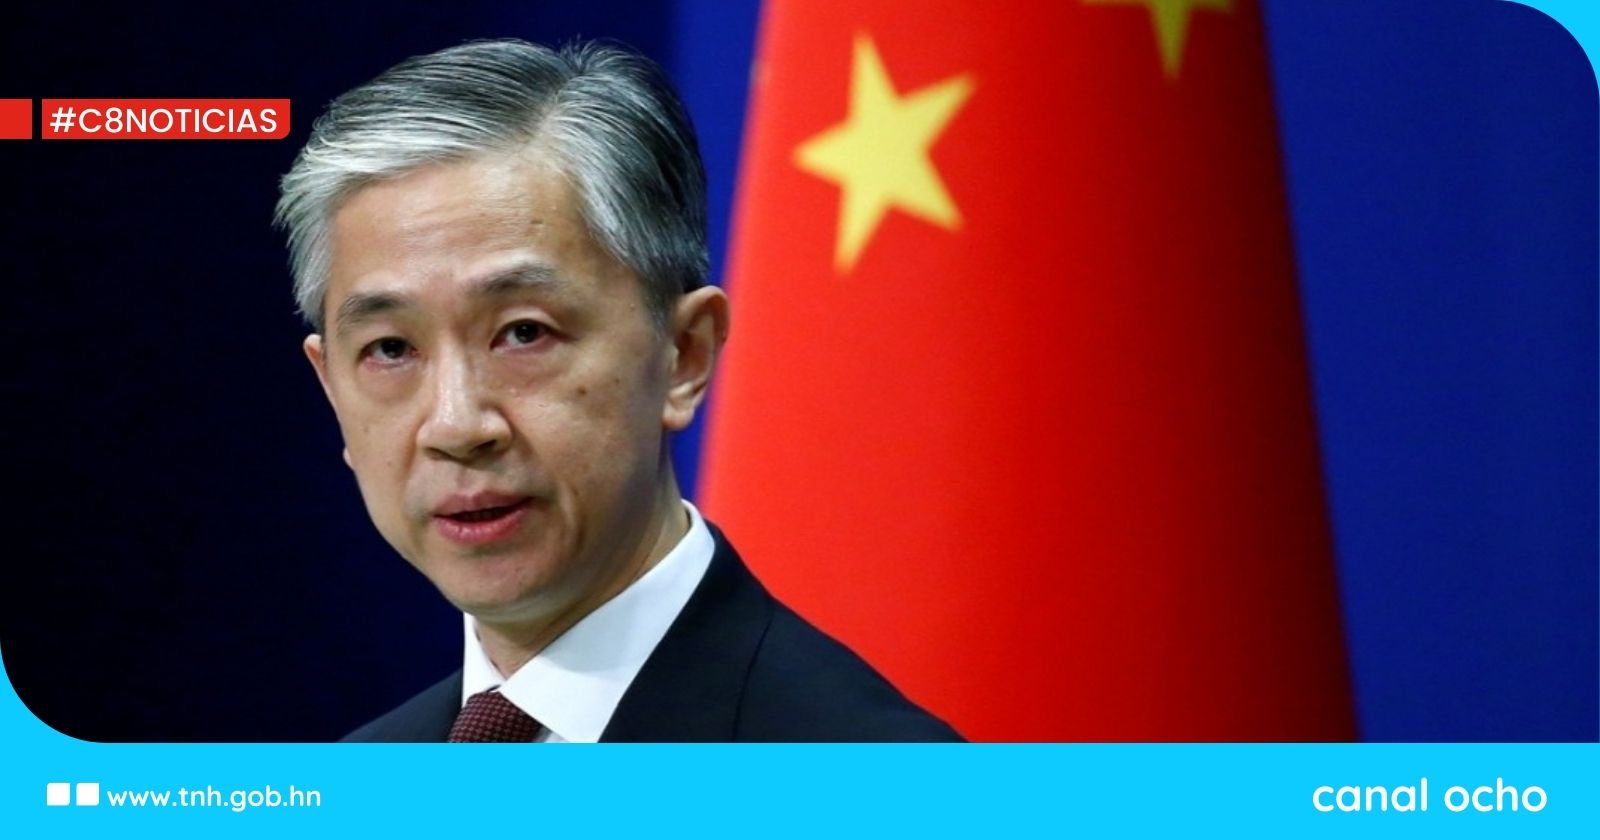 Nunca cambiará la realidad de que ambos lados del estrecho de Taiwán pertenecen a una sola China, afirma portavoz